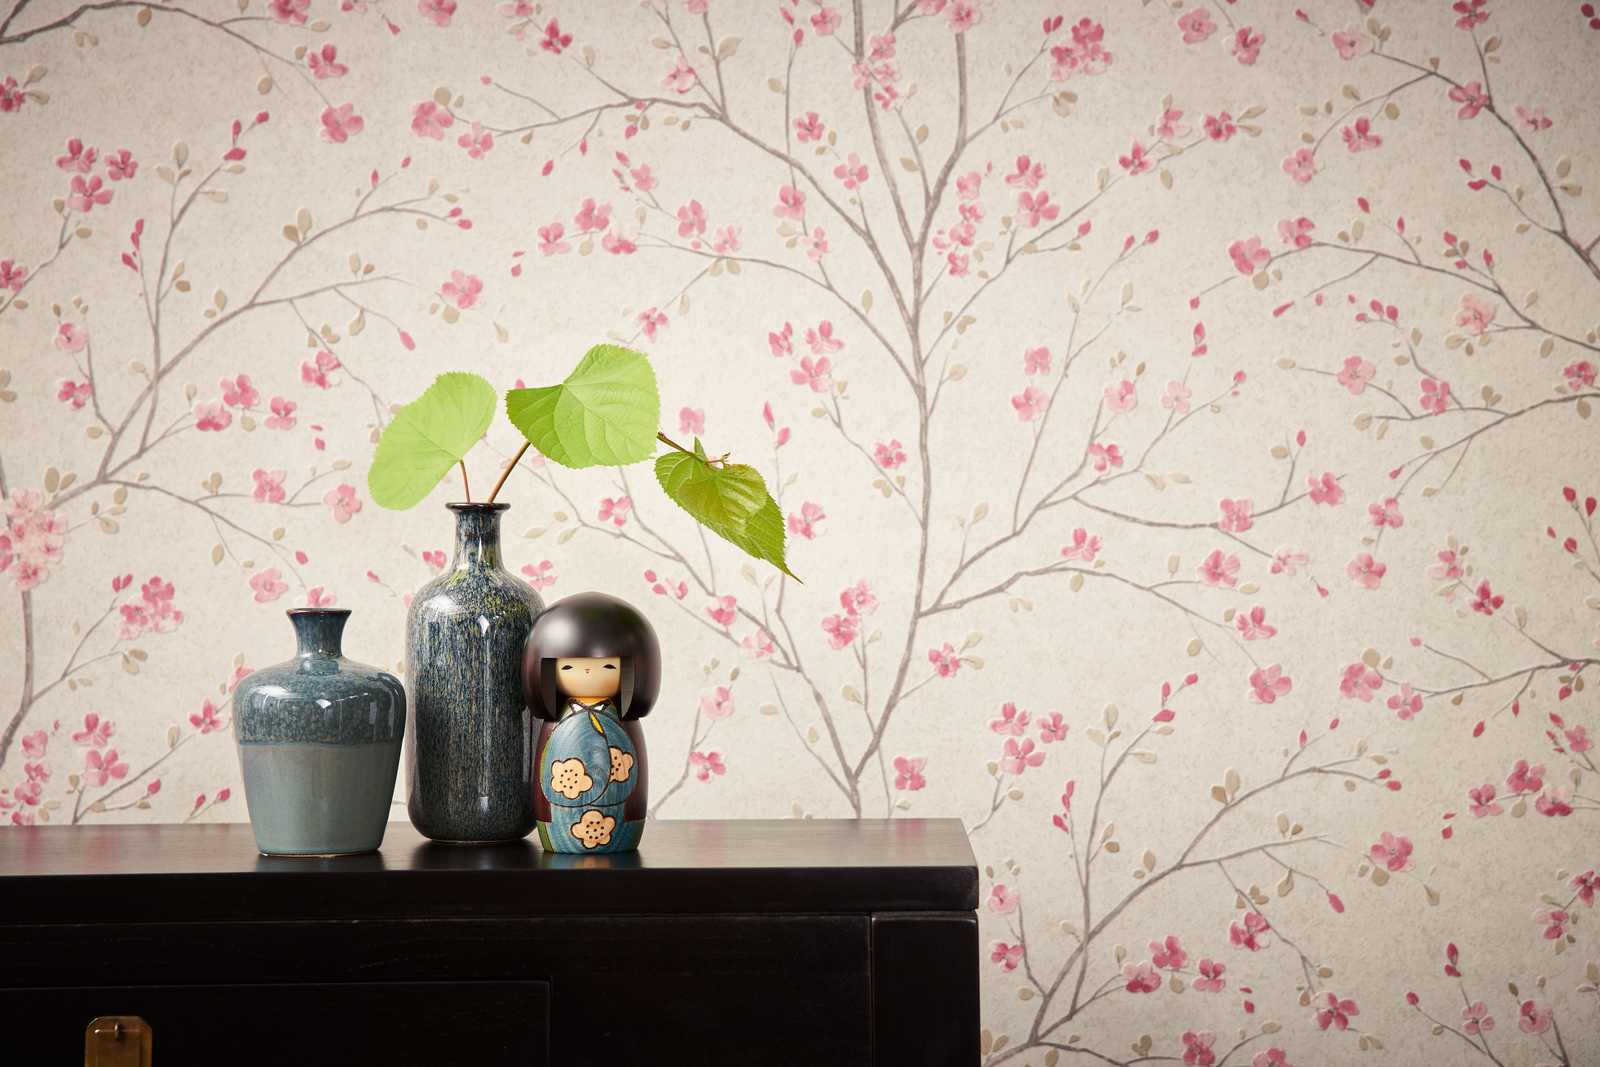             Papier peint intissé avec design de fleurs de cerisier dans le style asiatique - marron, rose, blanc
        